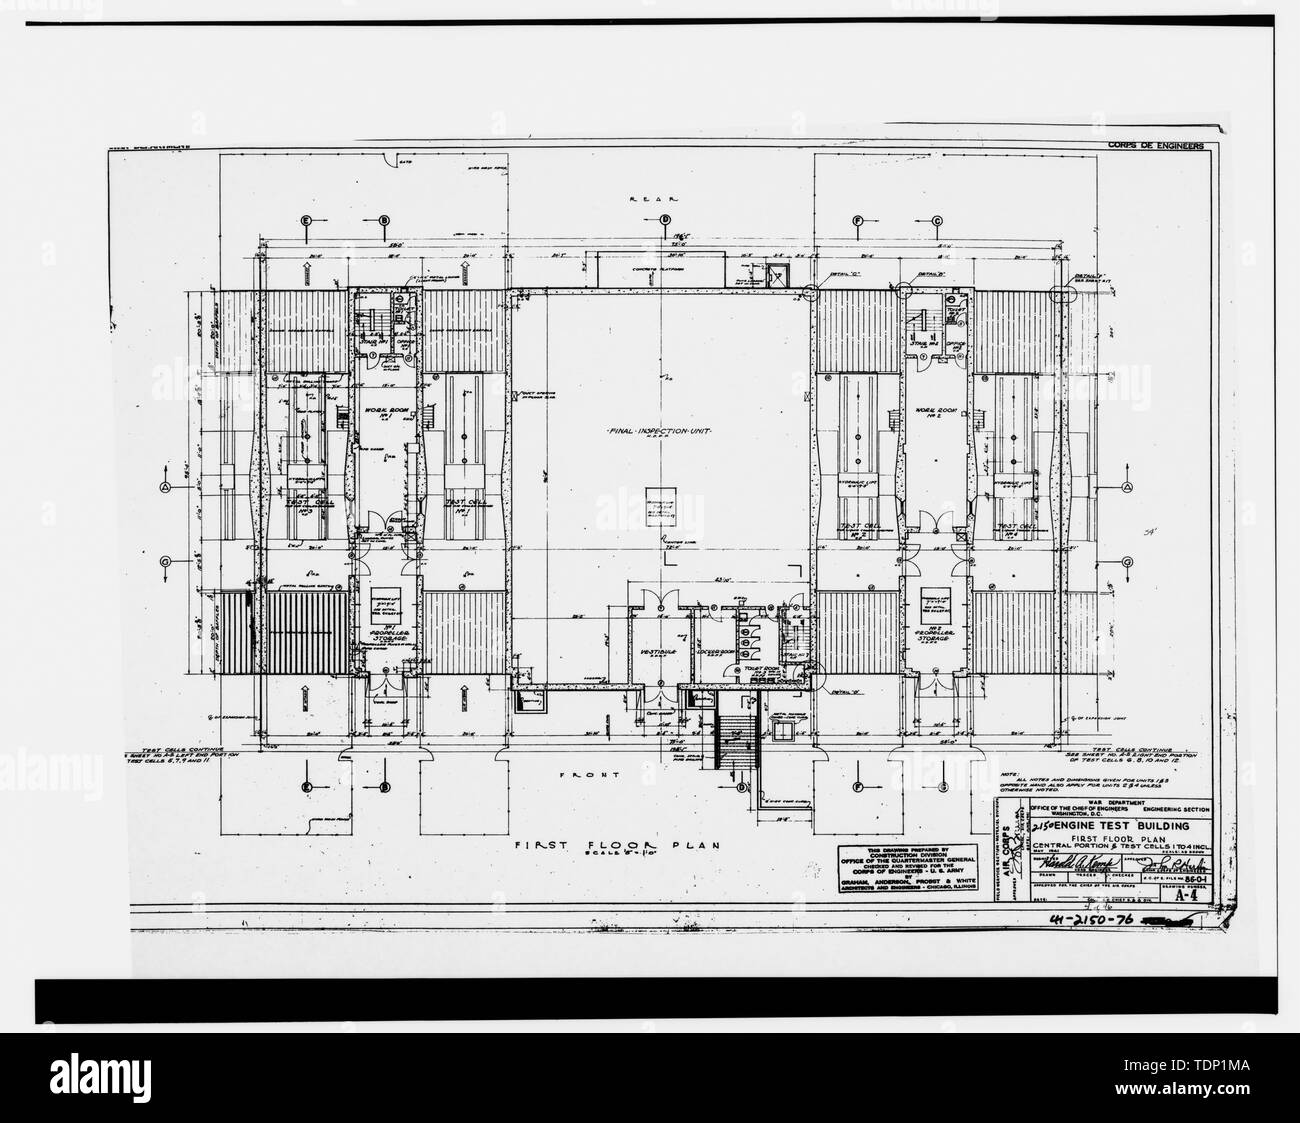 Photocopie de dessin technique, Mai, 1941 (dessin original situé à  Fairchild Air Force Base, le génie civil du bâtiment, du Génie Civil  vault). Cellule de contrôle moteur. Premier plan, PARTIE CENTRALE ET